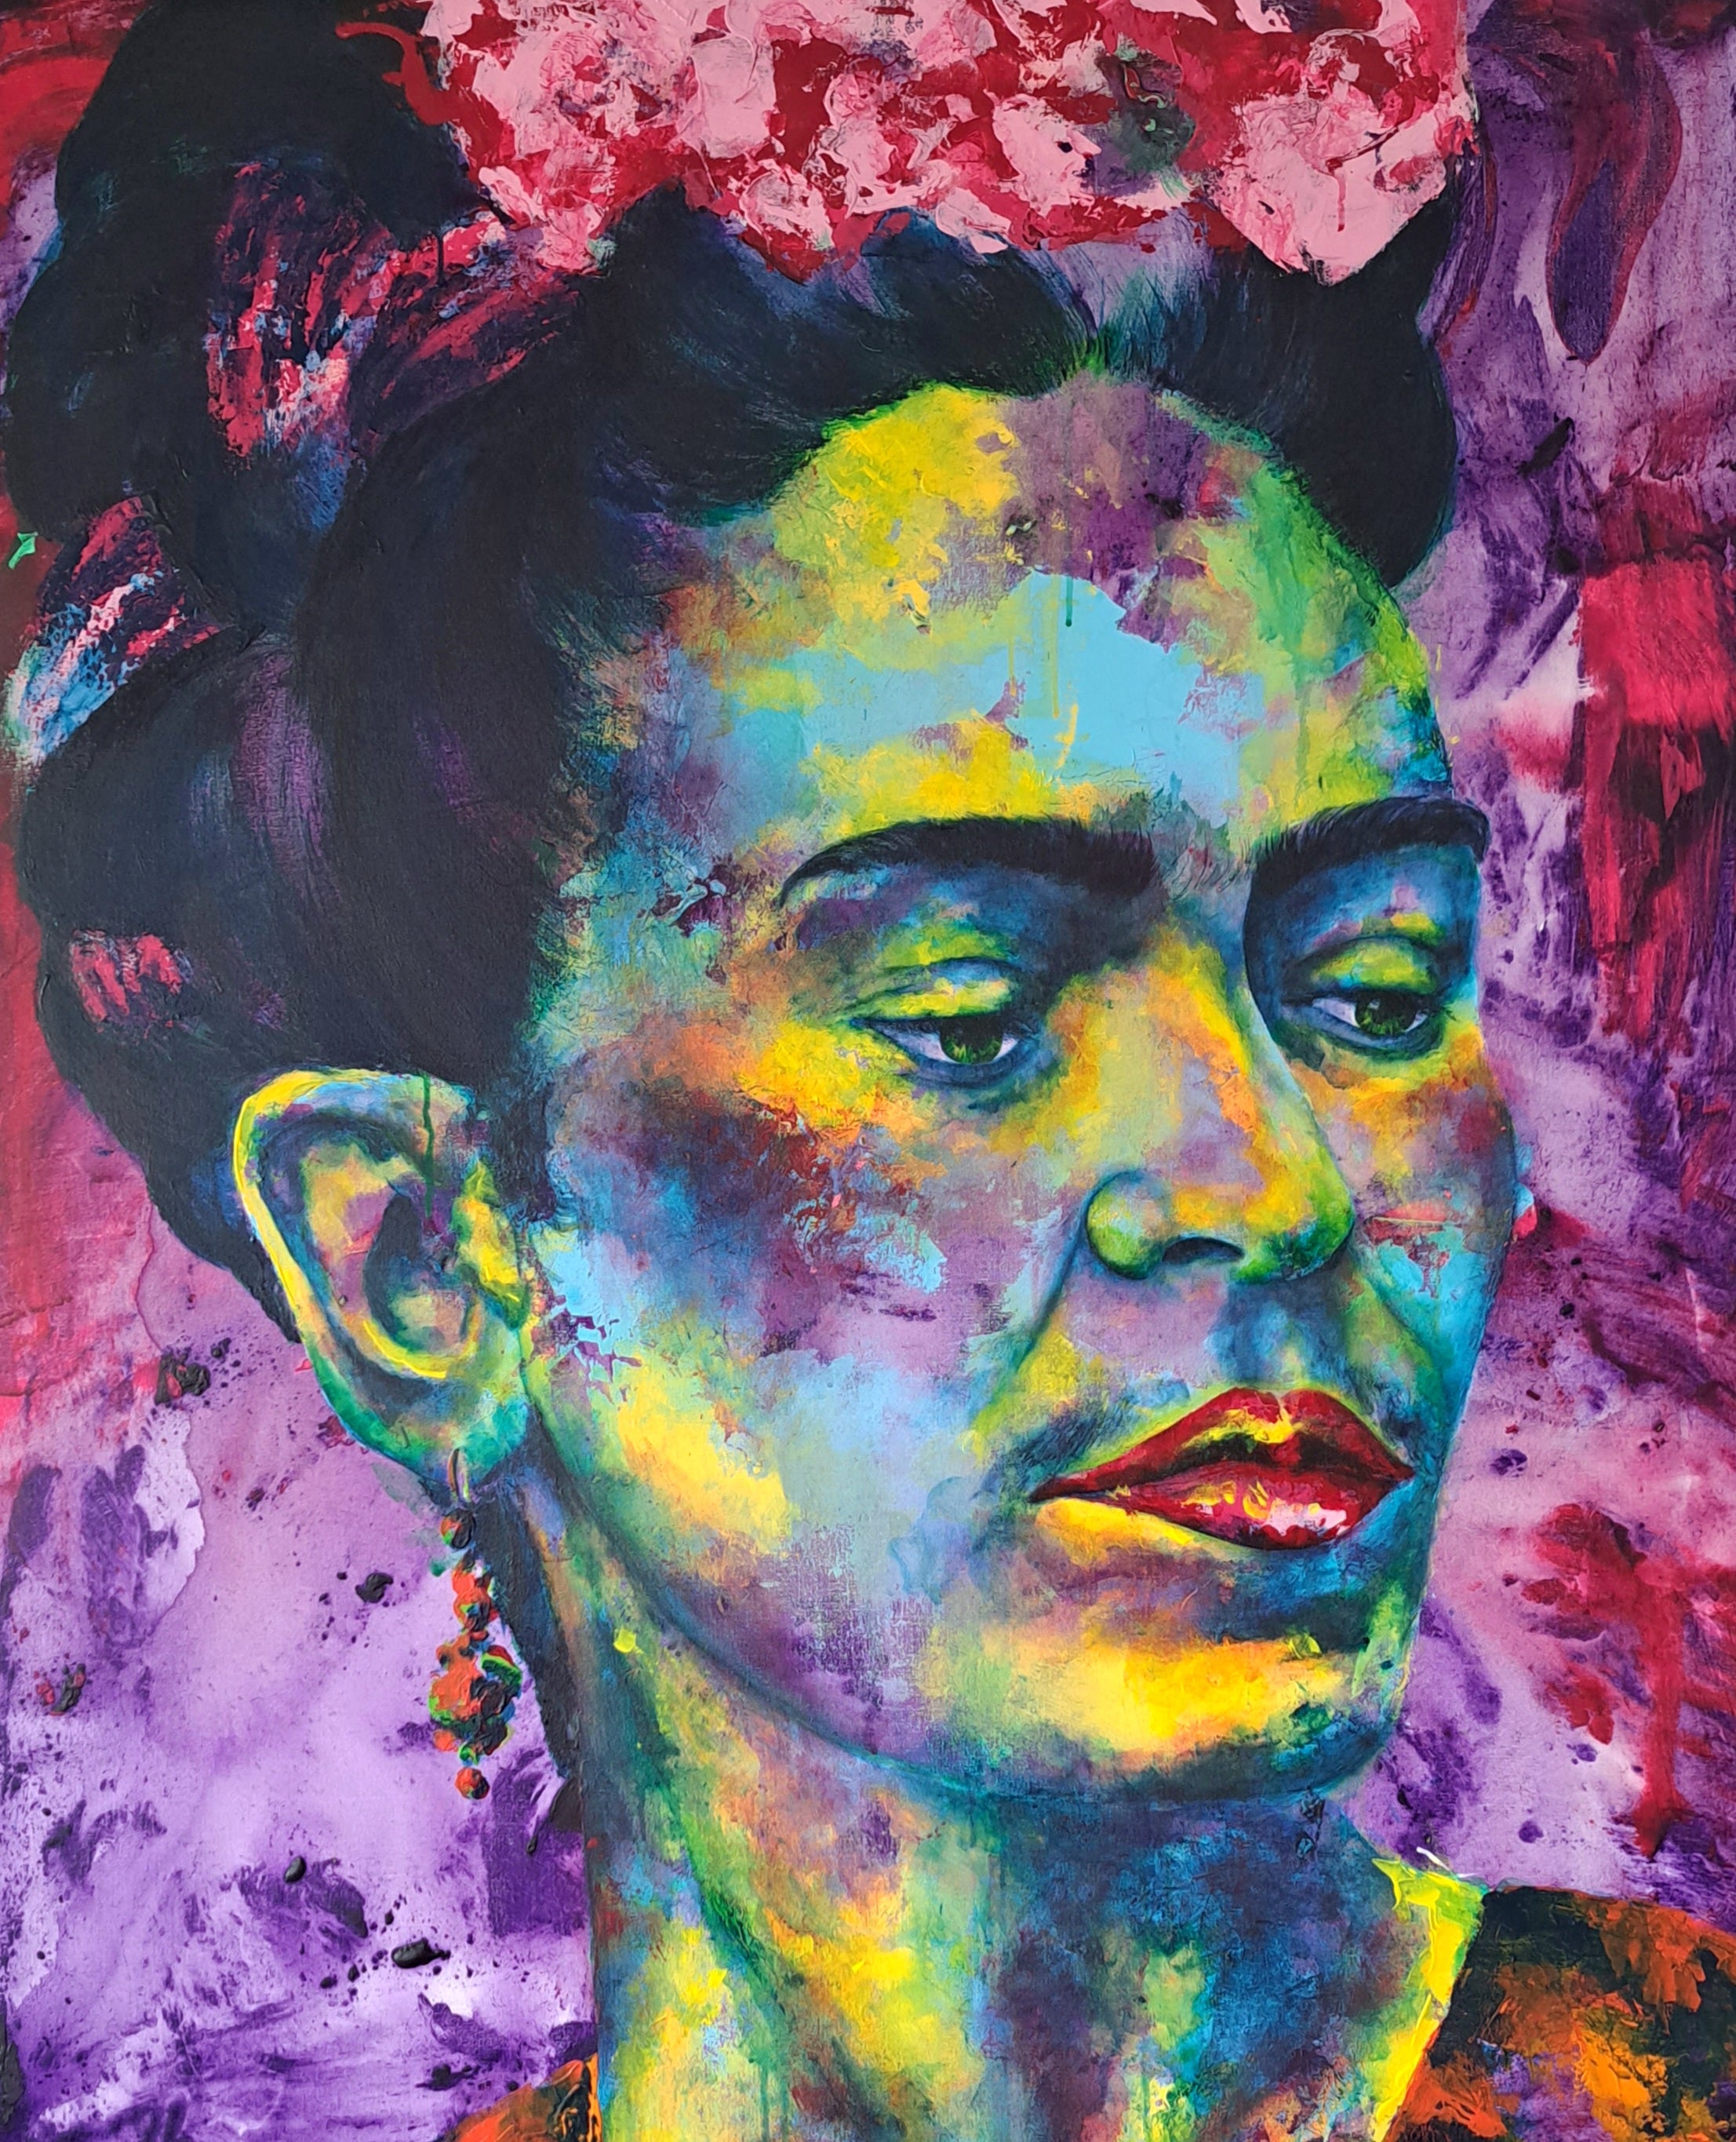 Frida Kahlo von Kascho Art aus Aachen.Die Augen der Frida Kahlo.